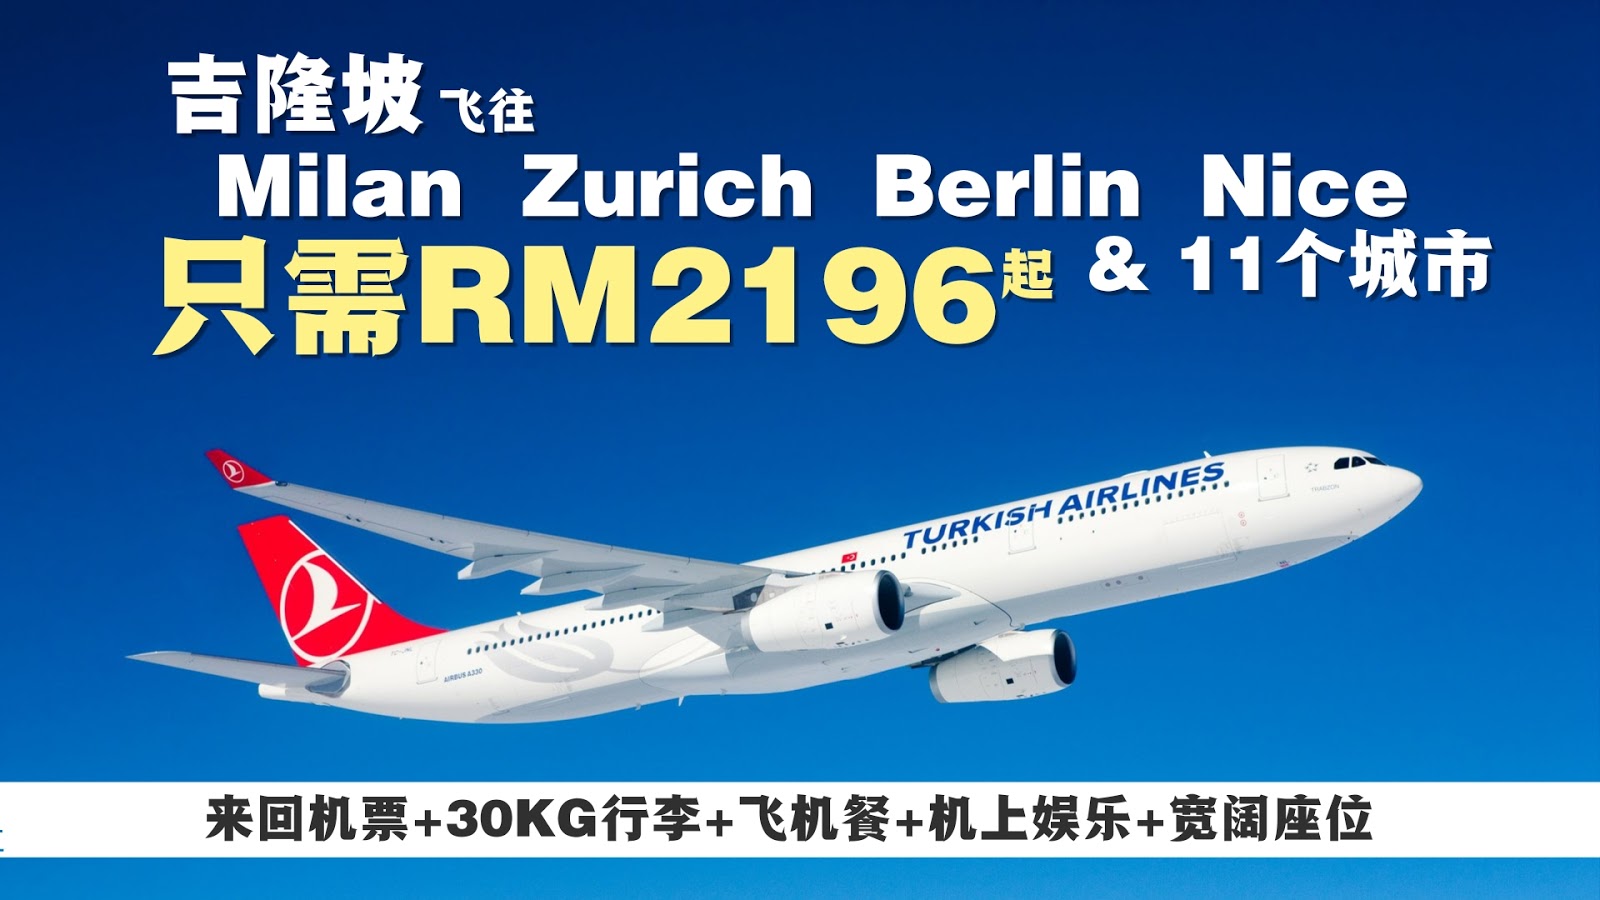 【旅游资讯】TURKISH AIRLINES 欧洲超便宜促销!! 只需RM2182起!!